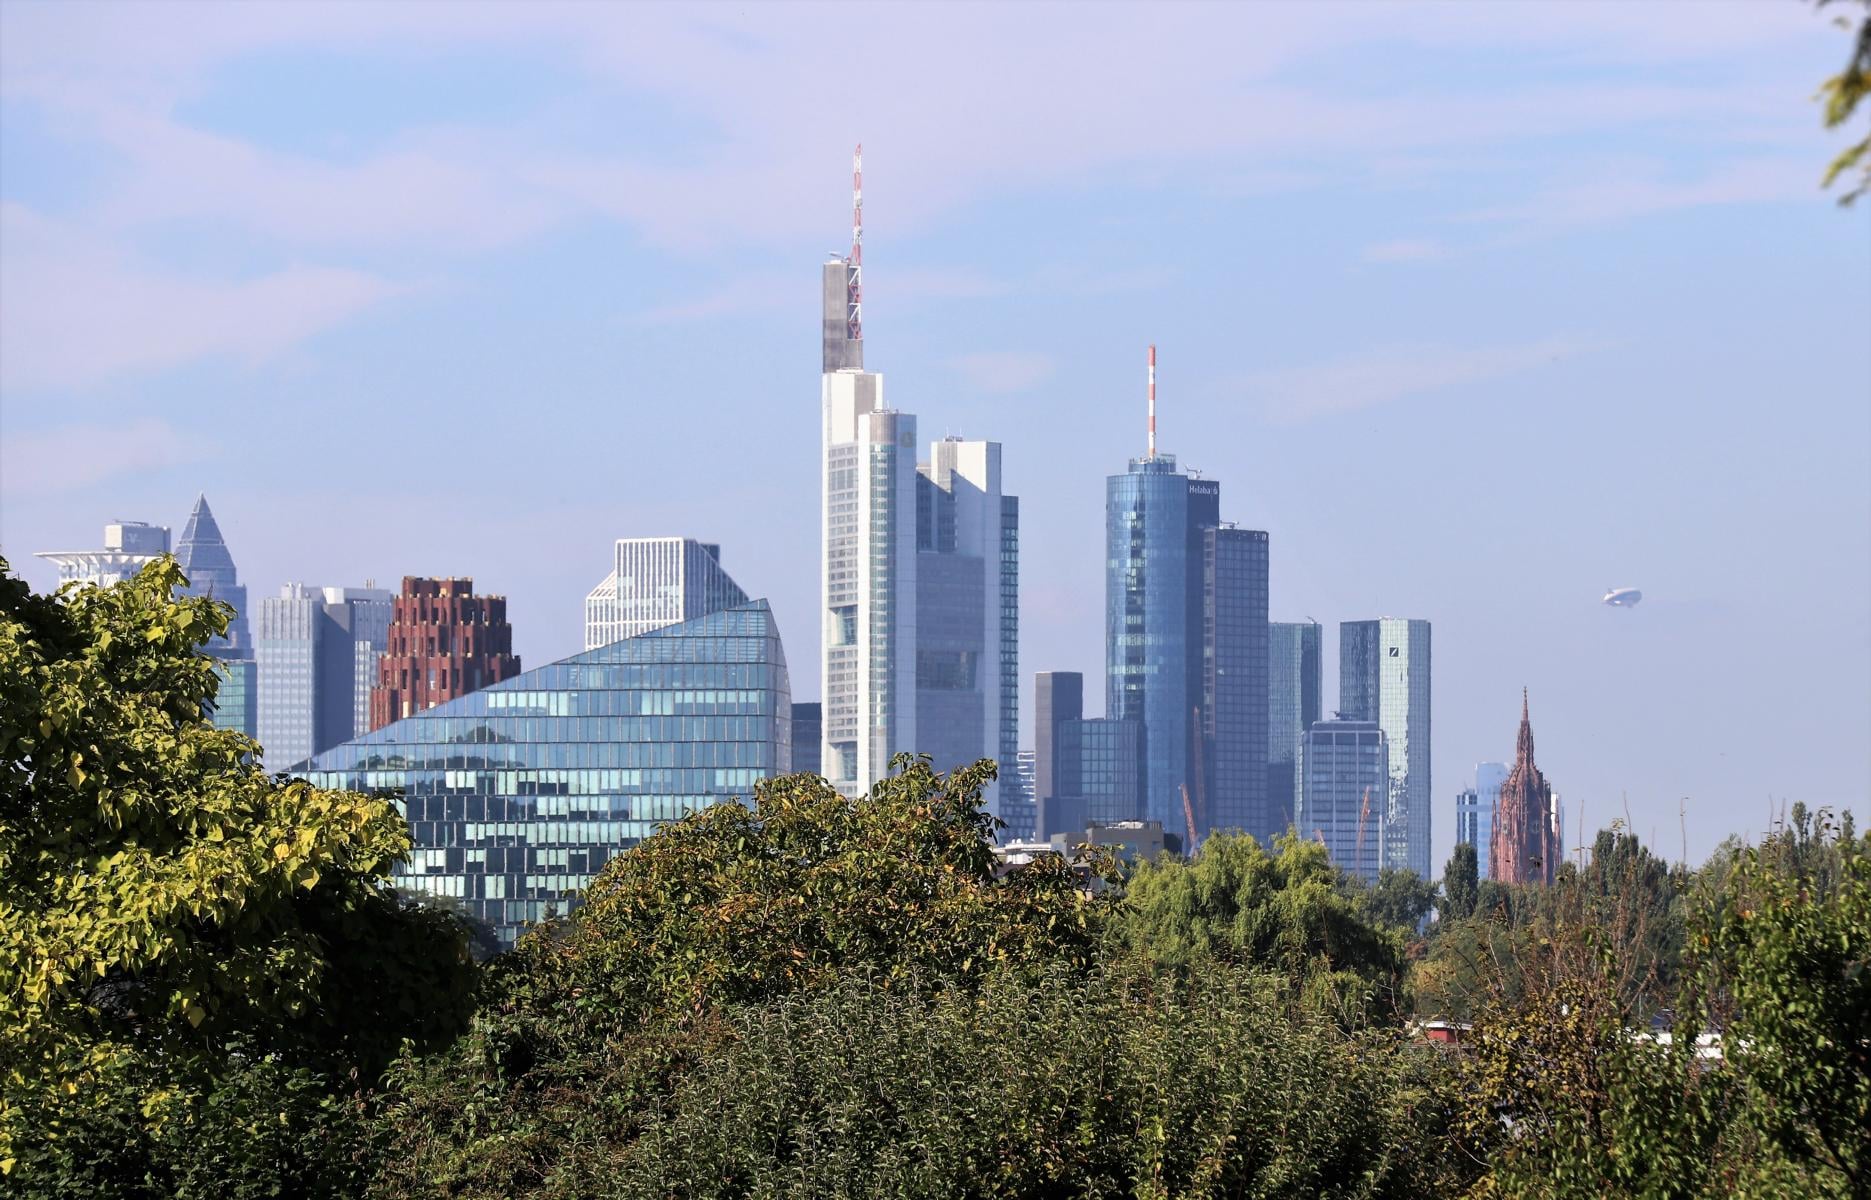 Frankfurt ist die lebenswerteste Stadt in Deutschland - so eine Studie der internationalen Wochenzeitung 'The Economist'/ London, 2. Wochenausgabe Juni 2022. KLAR DOCH! 